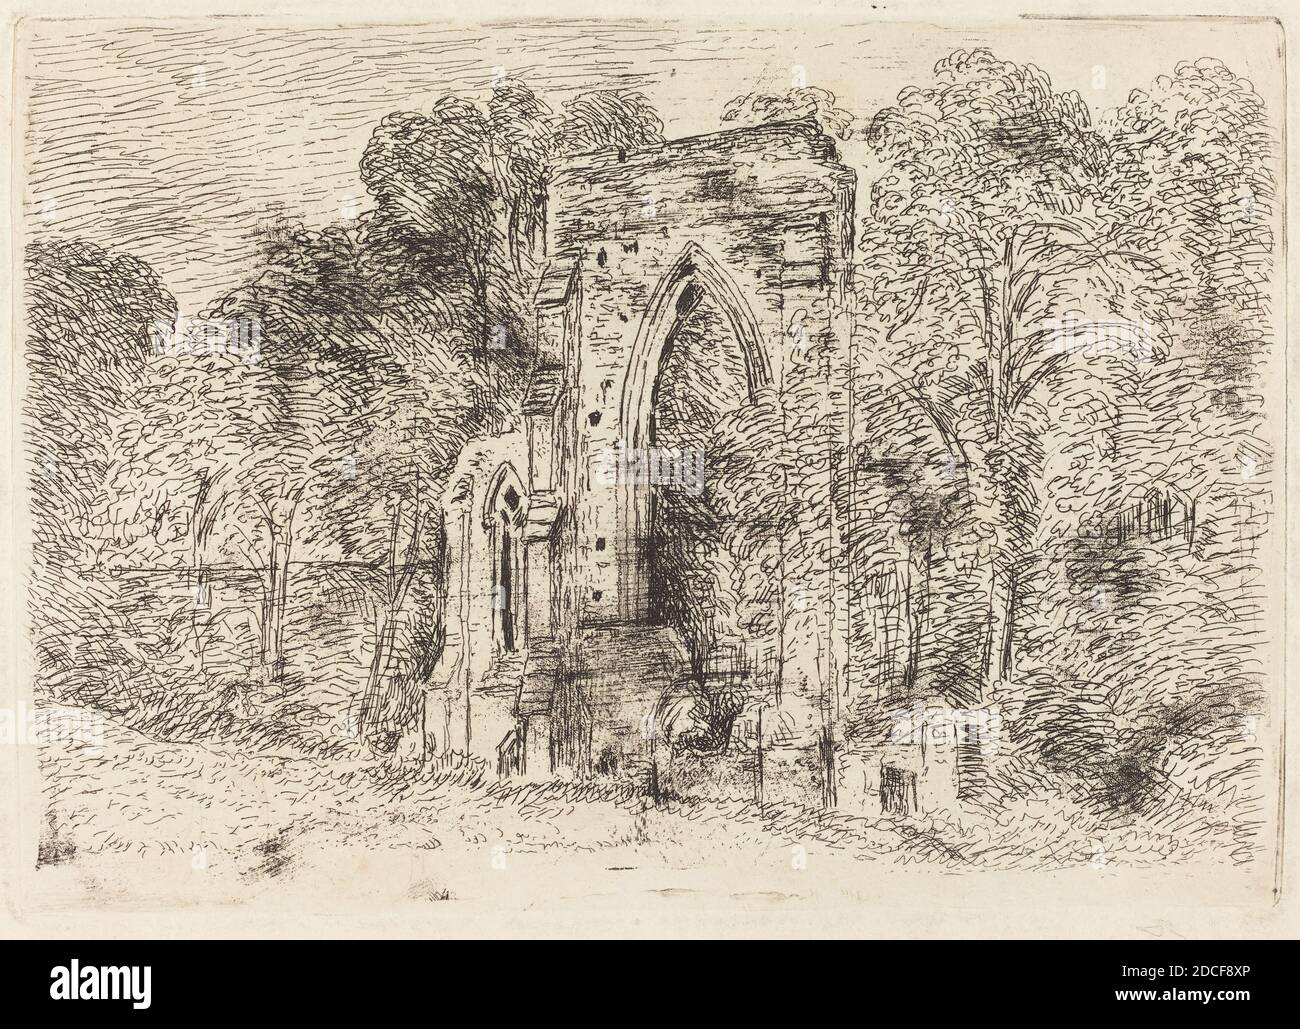 John Constable, (artista), British, 1776 - 1837, le rovine di Netley Abbey, c. 1826, incisione su carta da wove, piastra: 13.2 x 18.8 cm (5 3/16 x 7 3/8 pollici), foglio: 22 x 30 cm (8 11/16 x 11 13/16 pollici Foto Stock